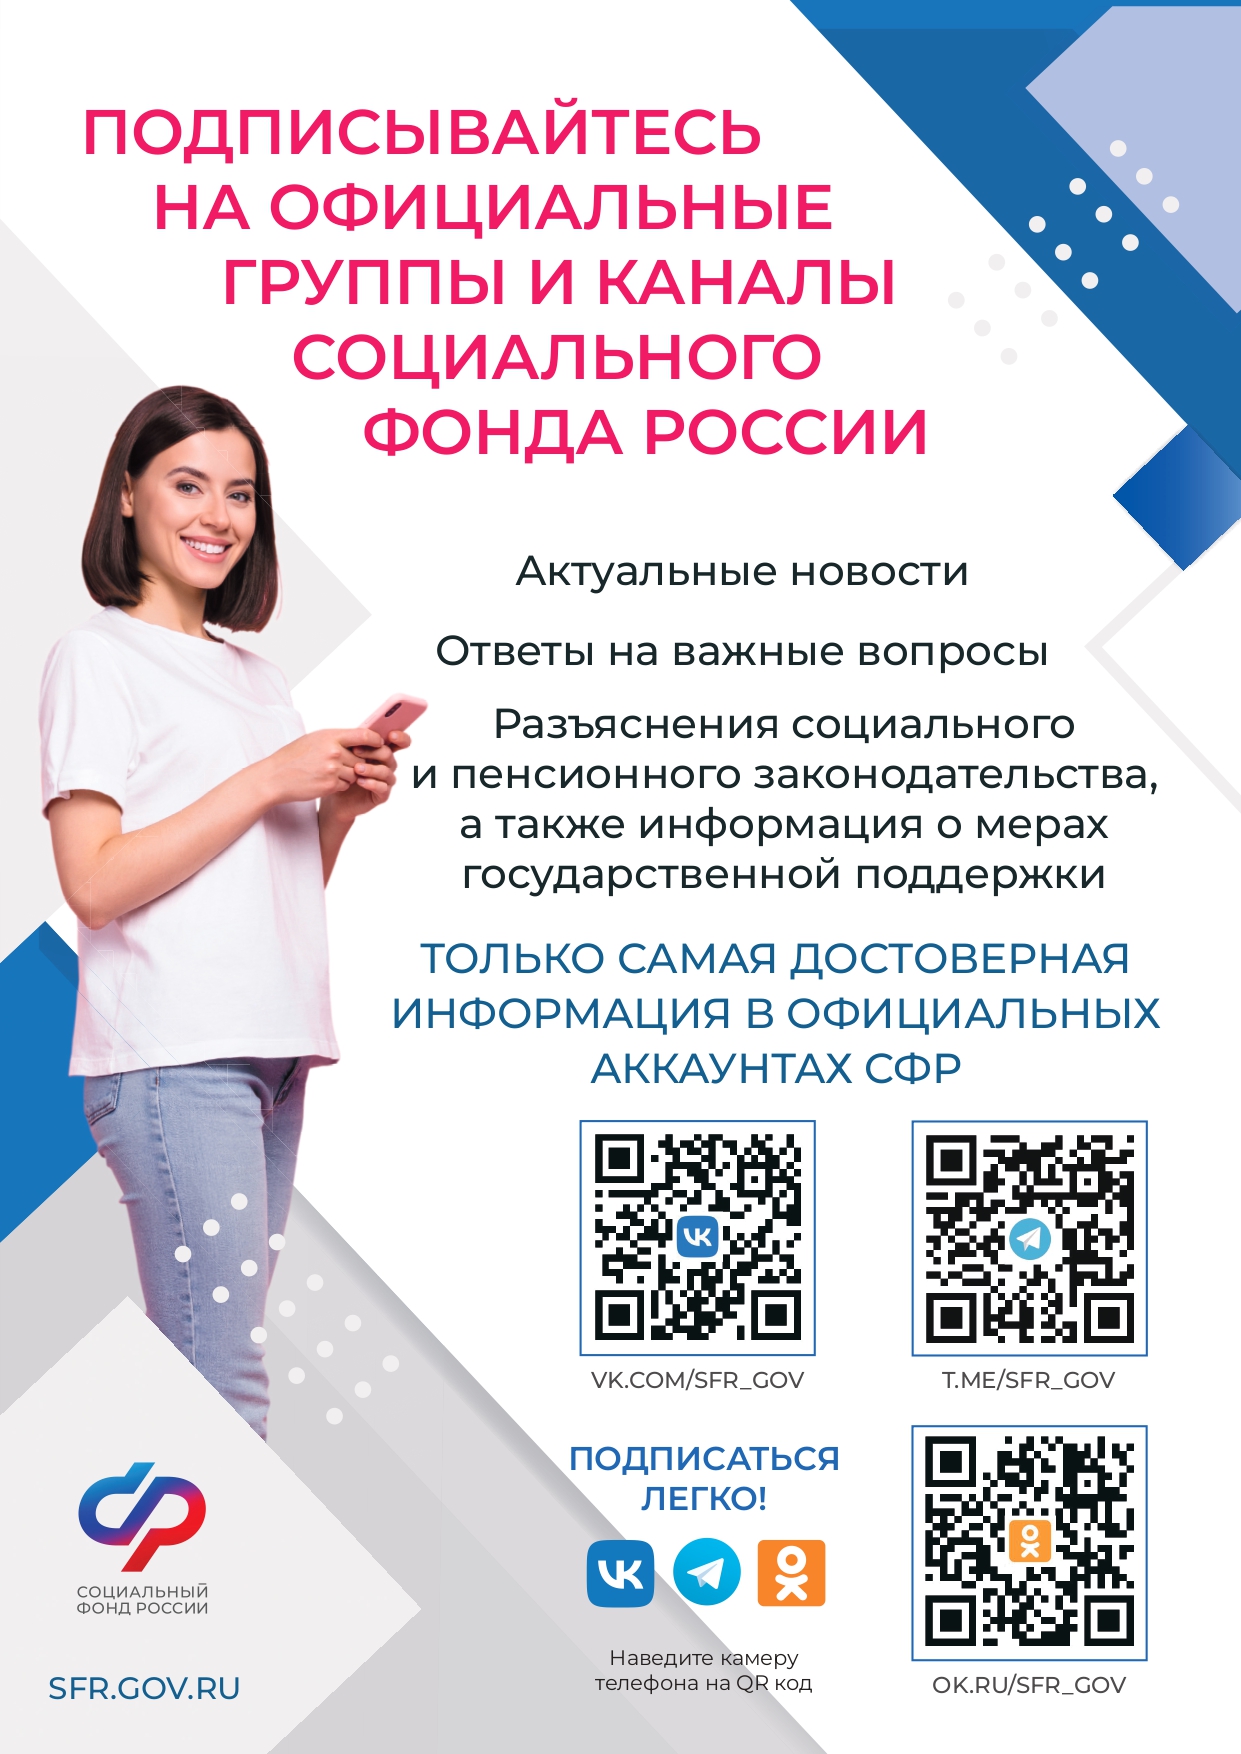 Подписывайтесь на официальные группы и каналы Социального фонда России